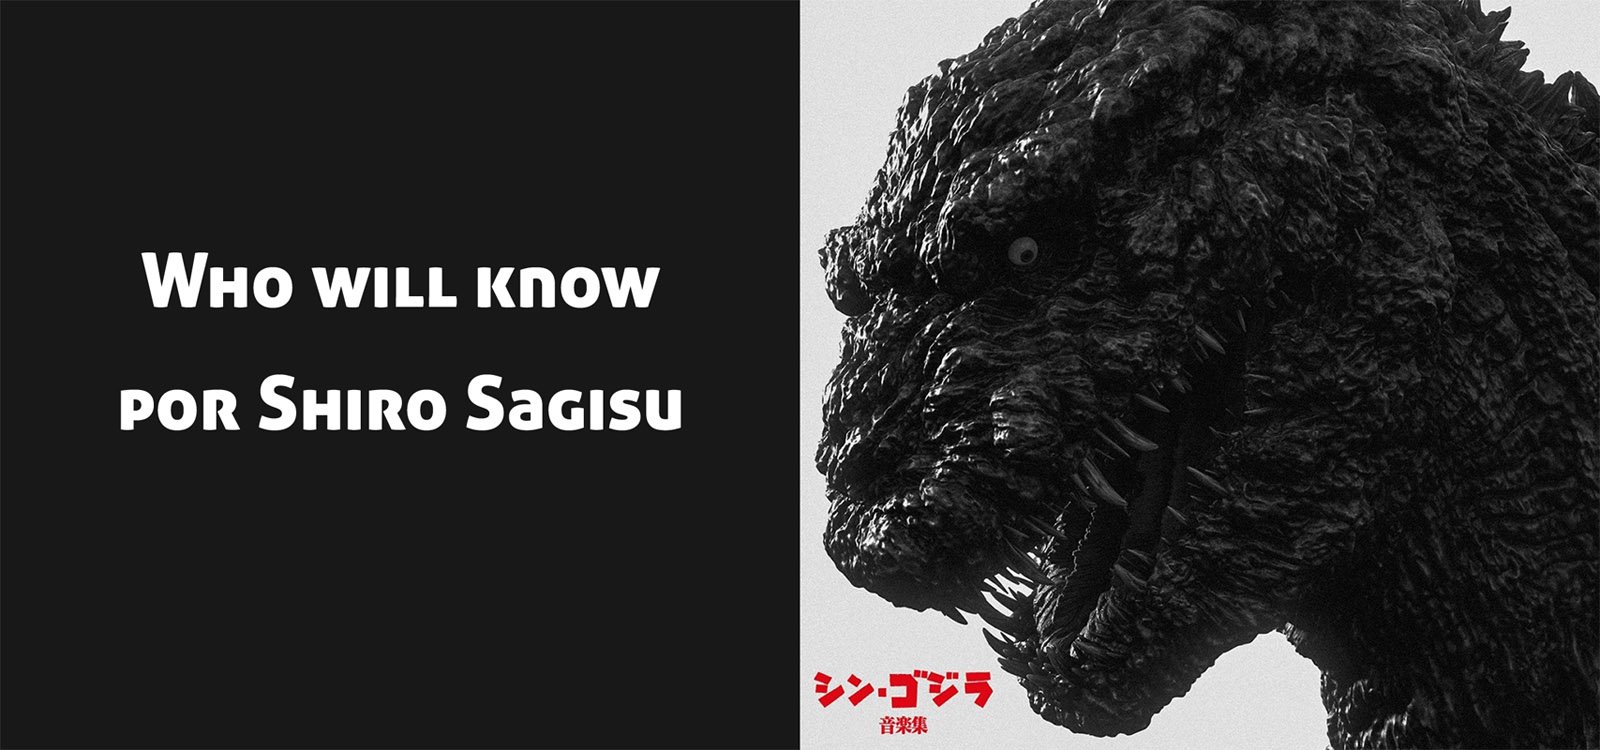 Who will know (por Shiro Sagisu) del soundtrack de Shin Gojira